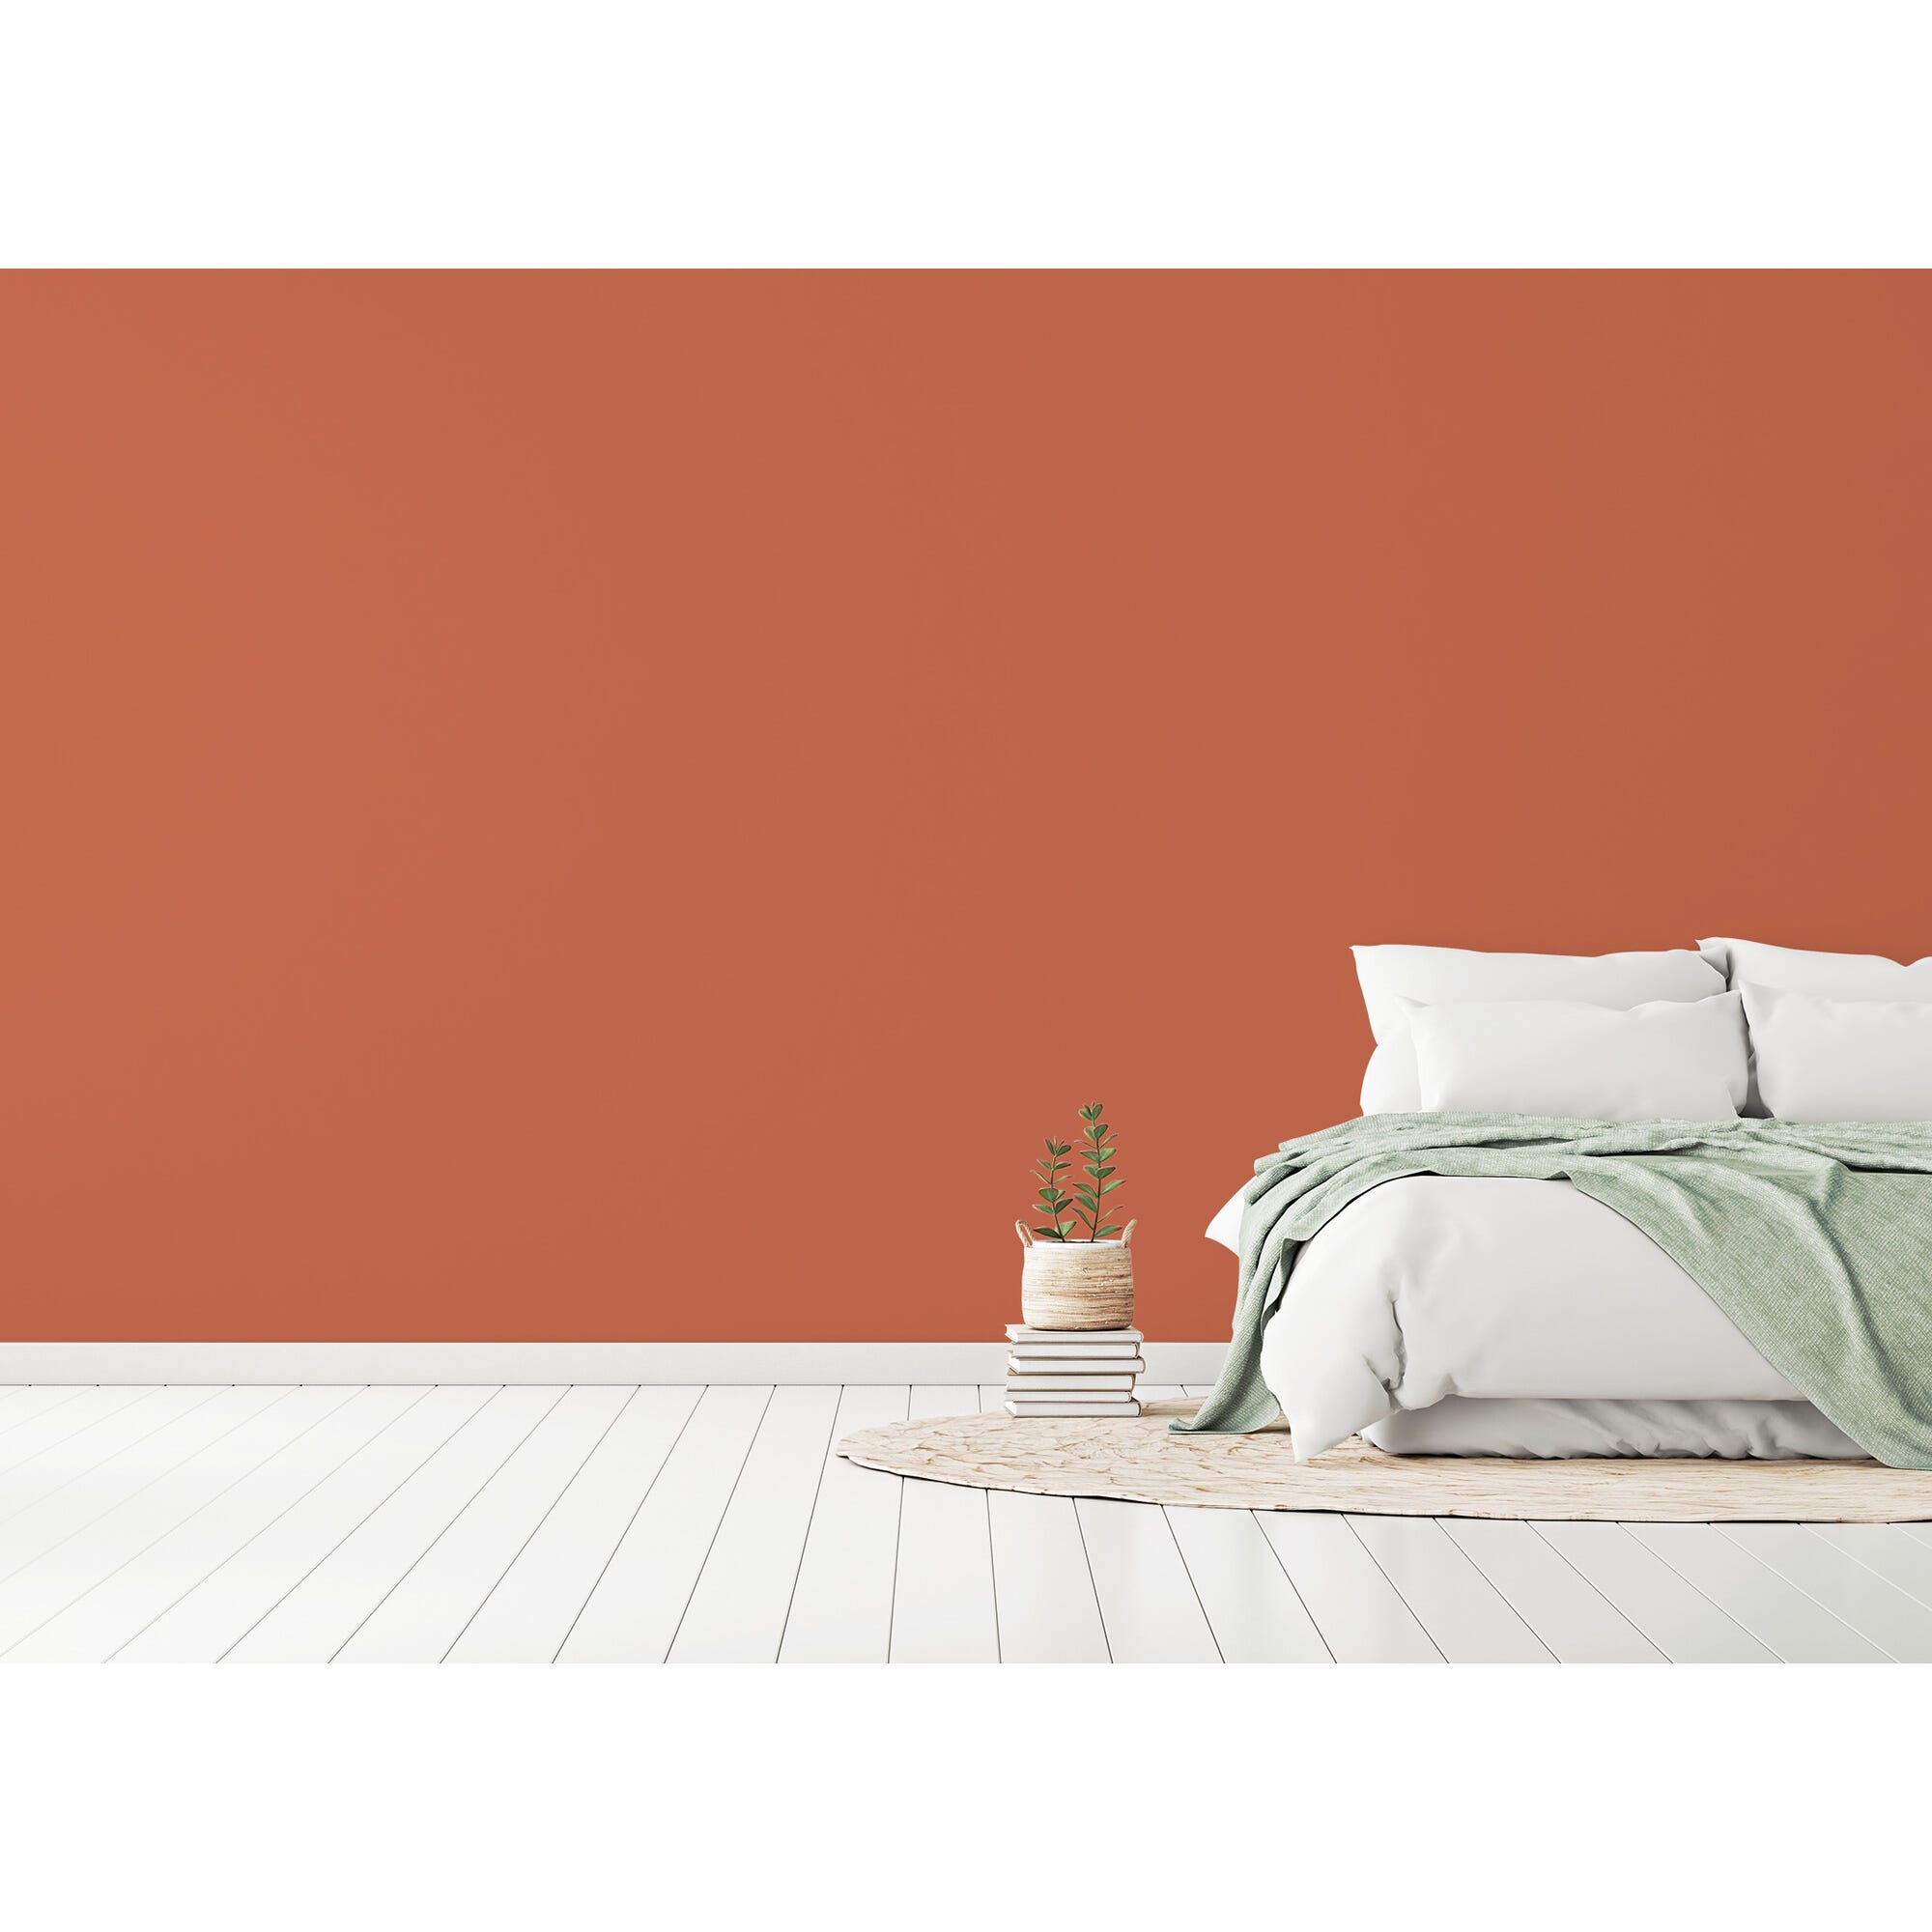 Peinture intérieure mat orange vernia teintée en machine 10L HPO - MOSAIK 4